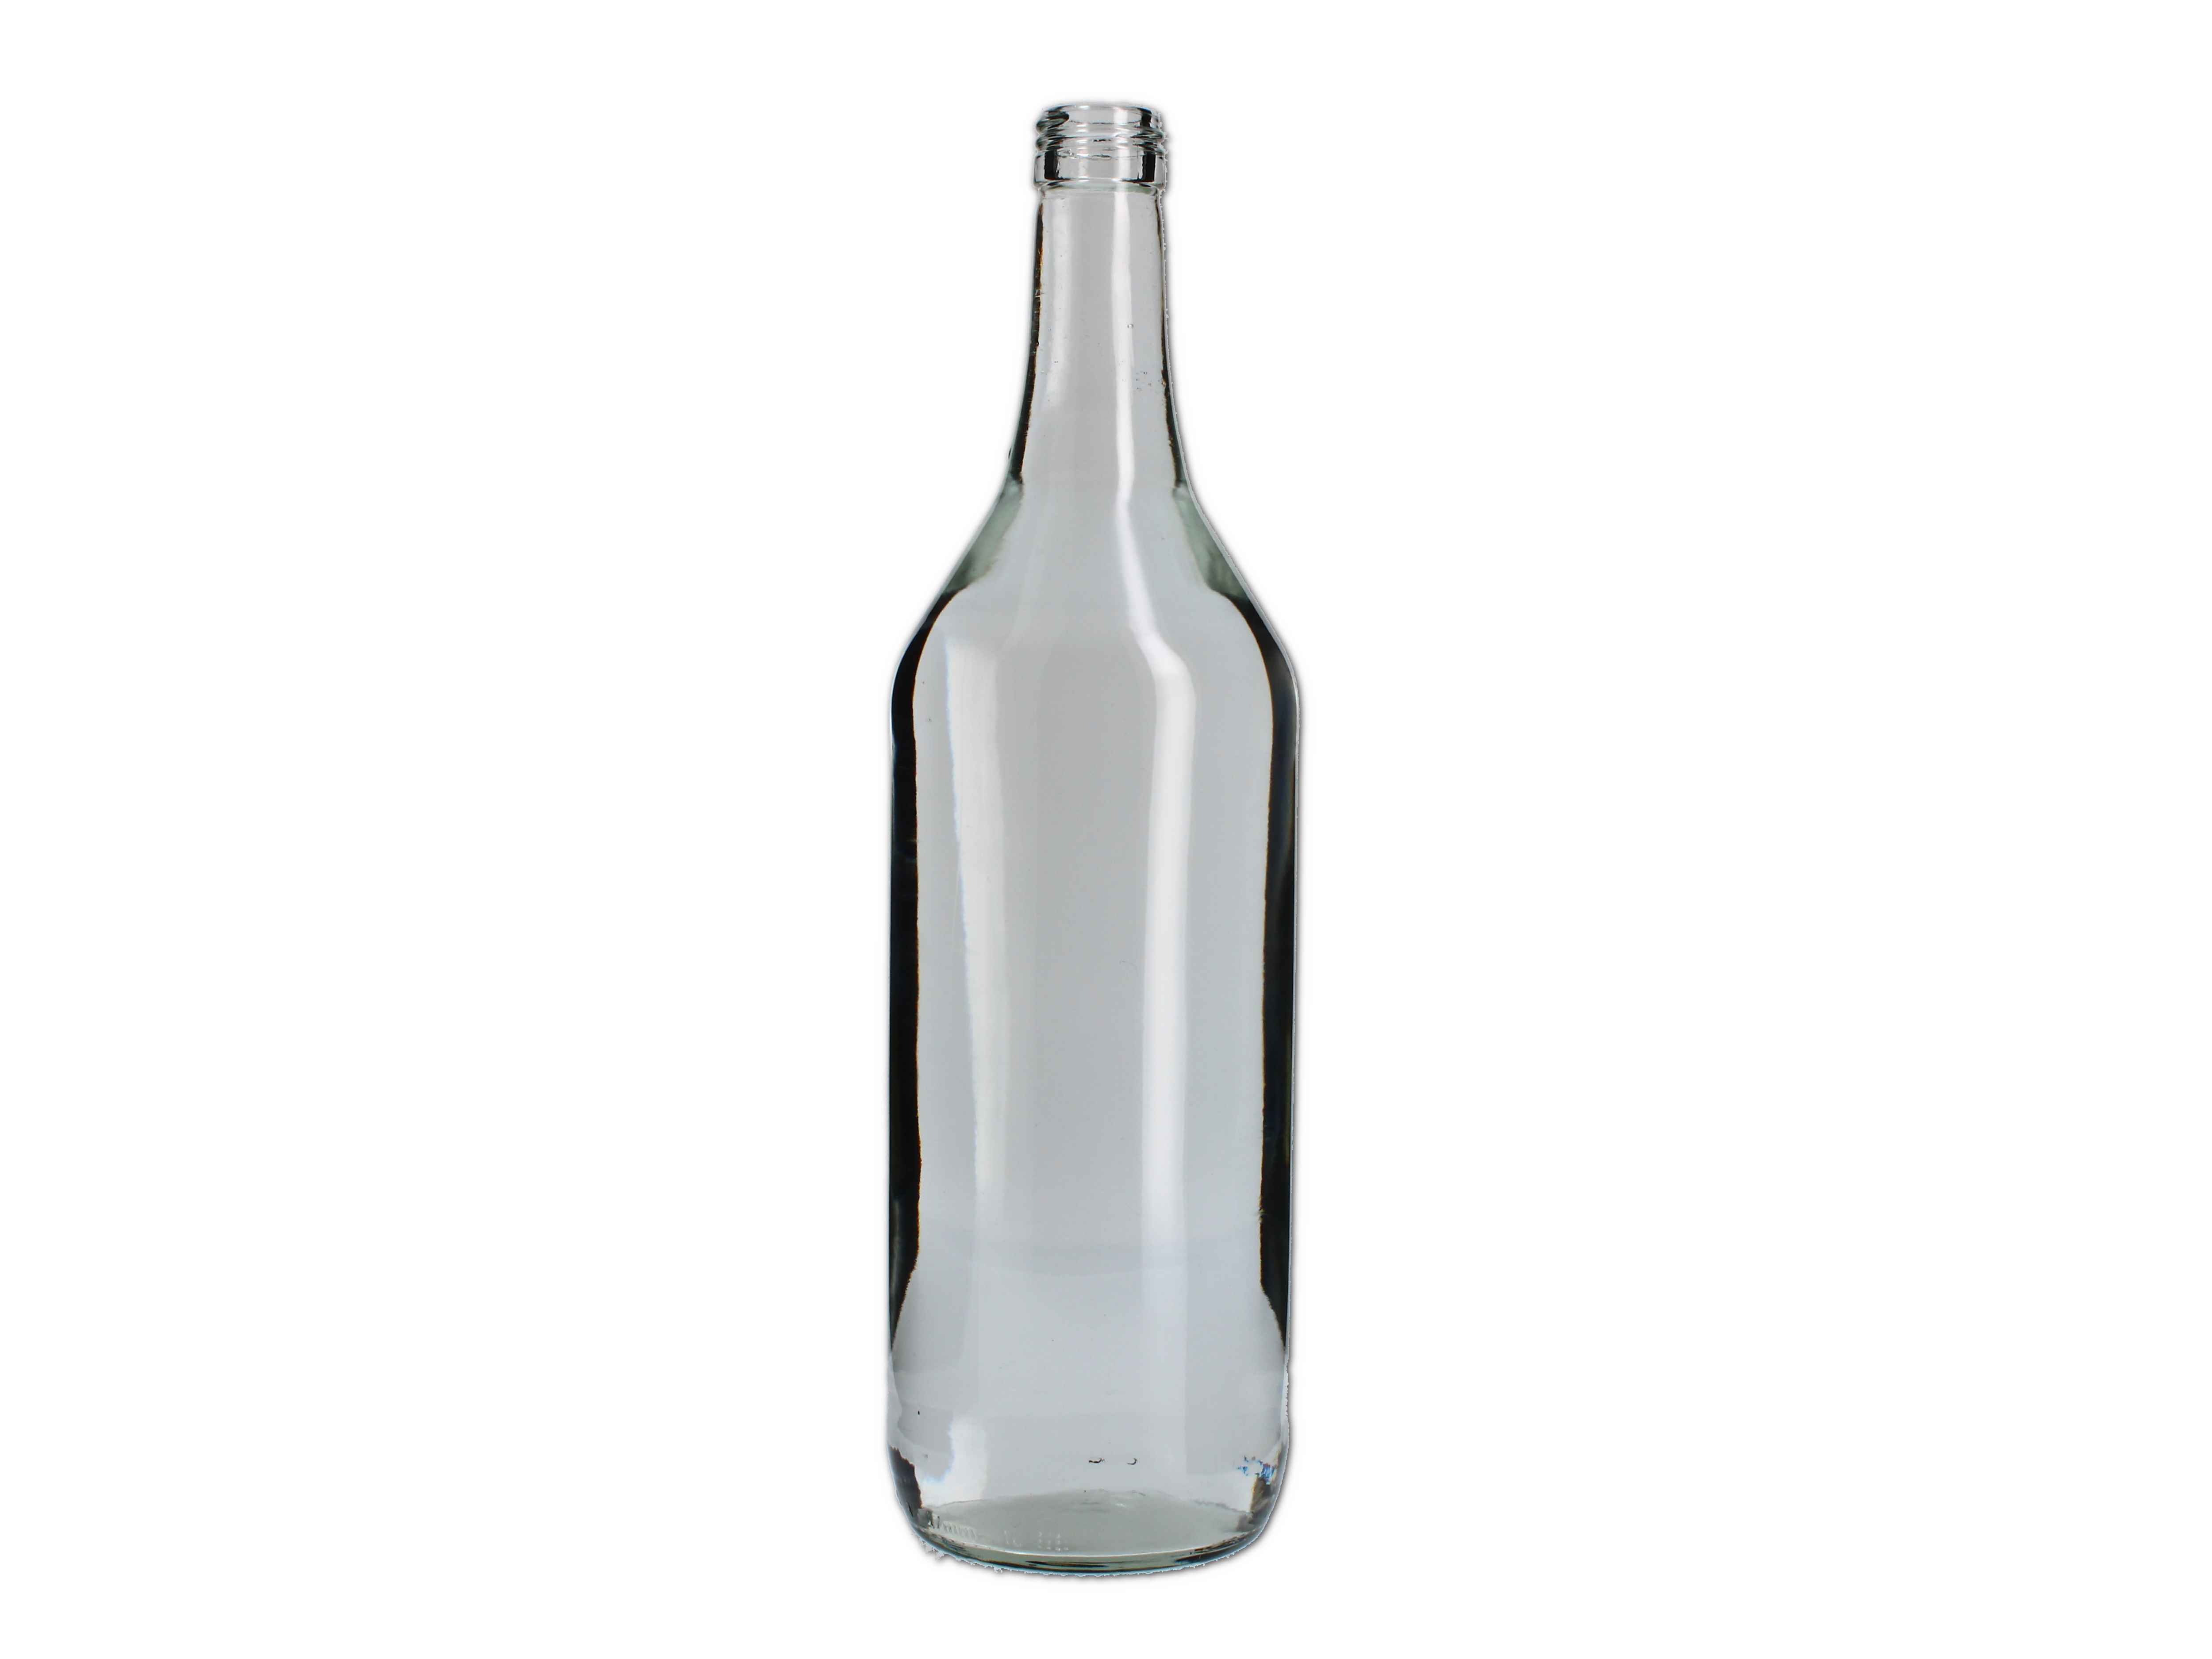    Fruchtsaftflasche - Hals 1000ml (PP28) - Abverkaufspreis